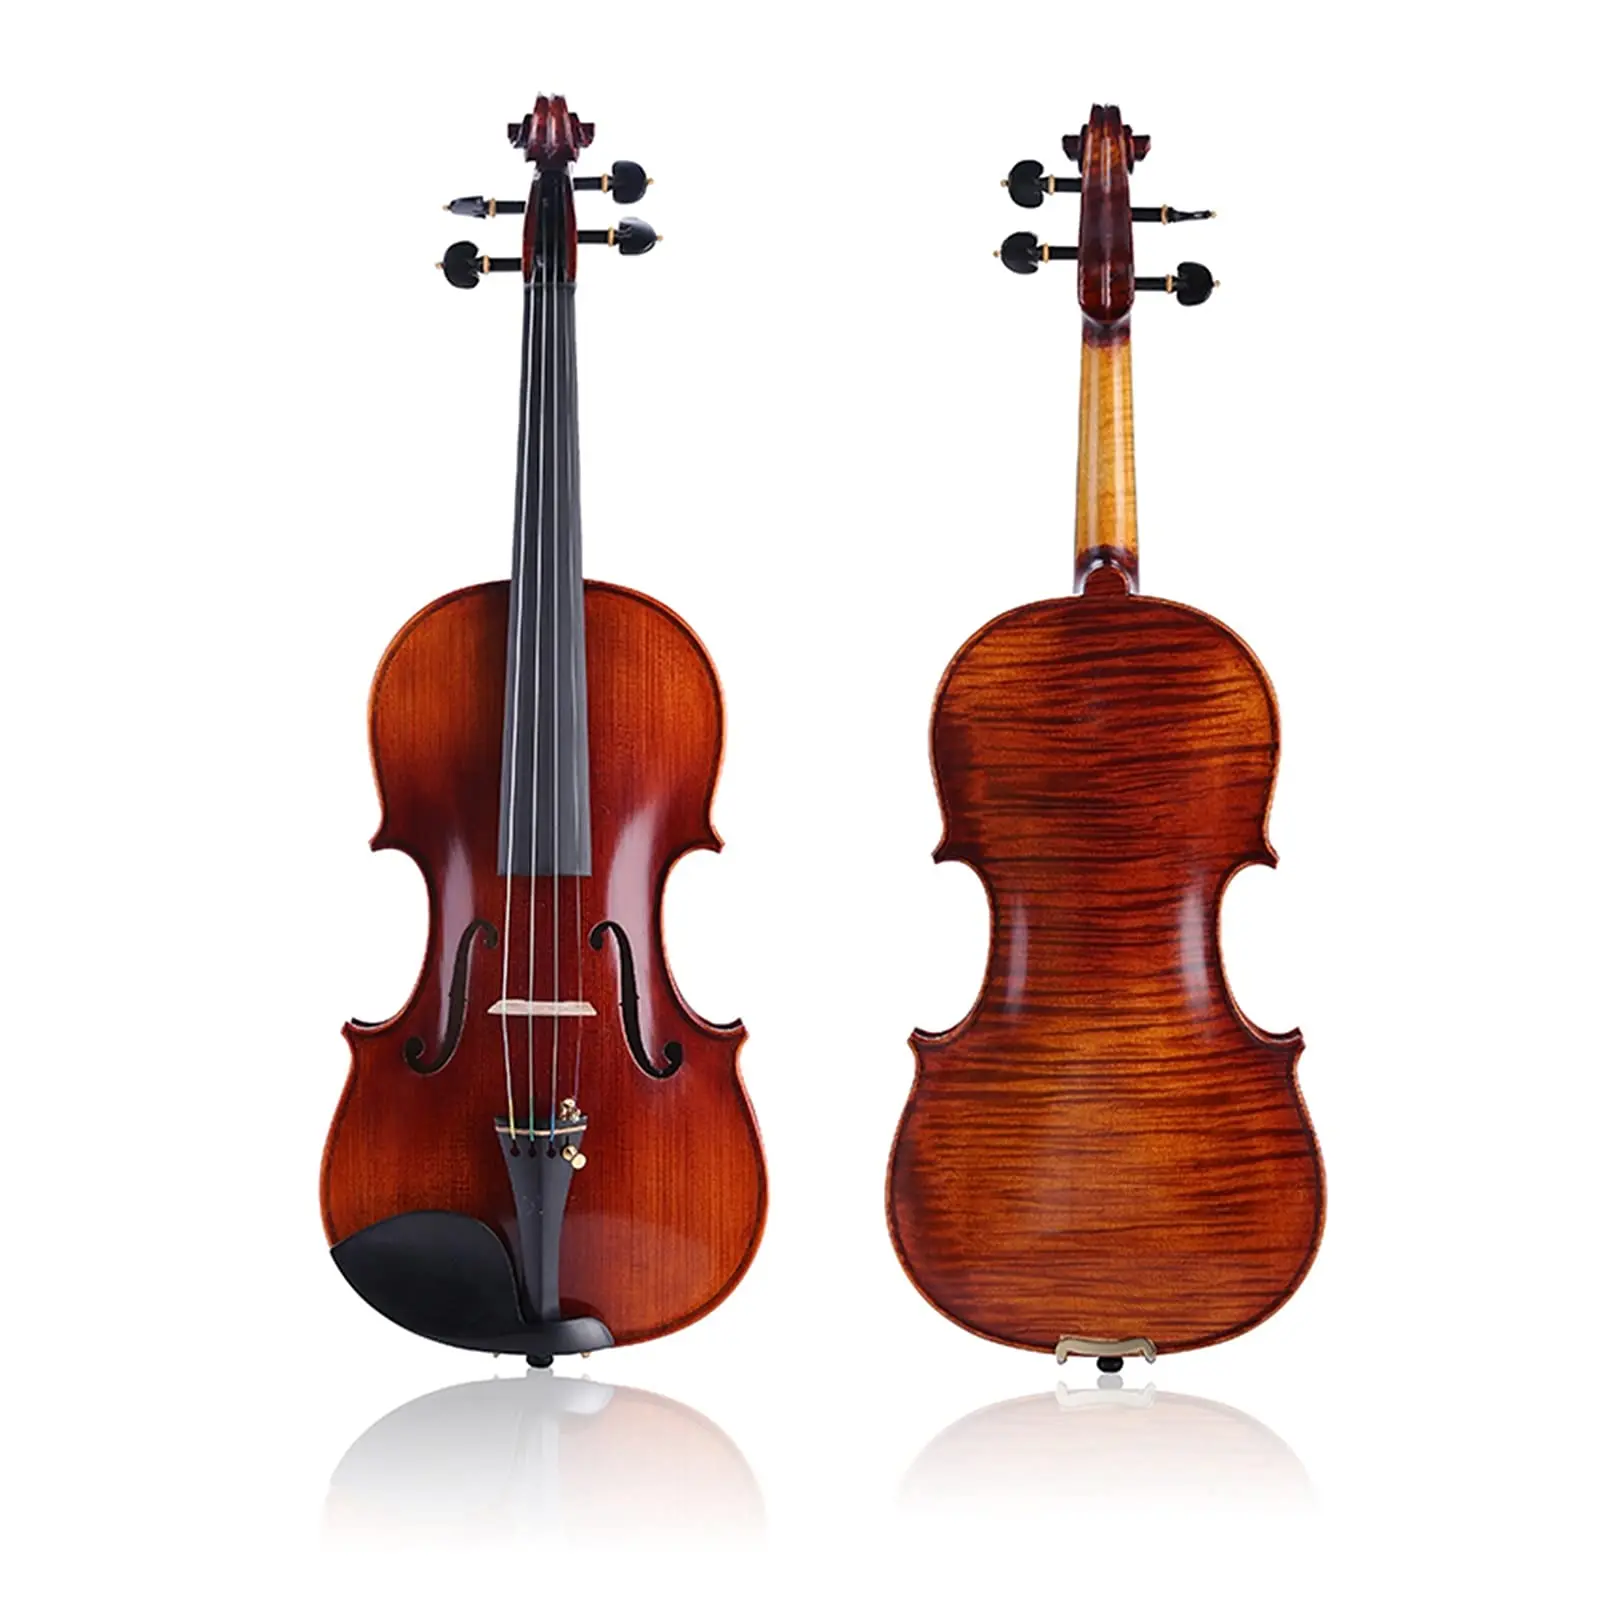 violines gliga opiniones - Son buenos los violines rumanos